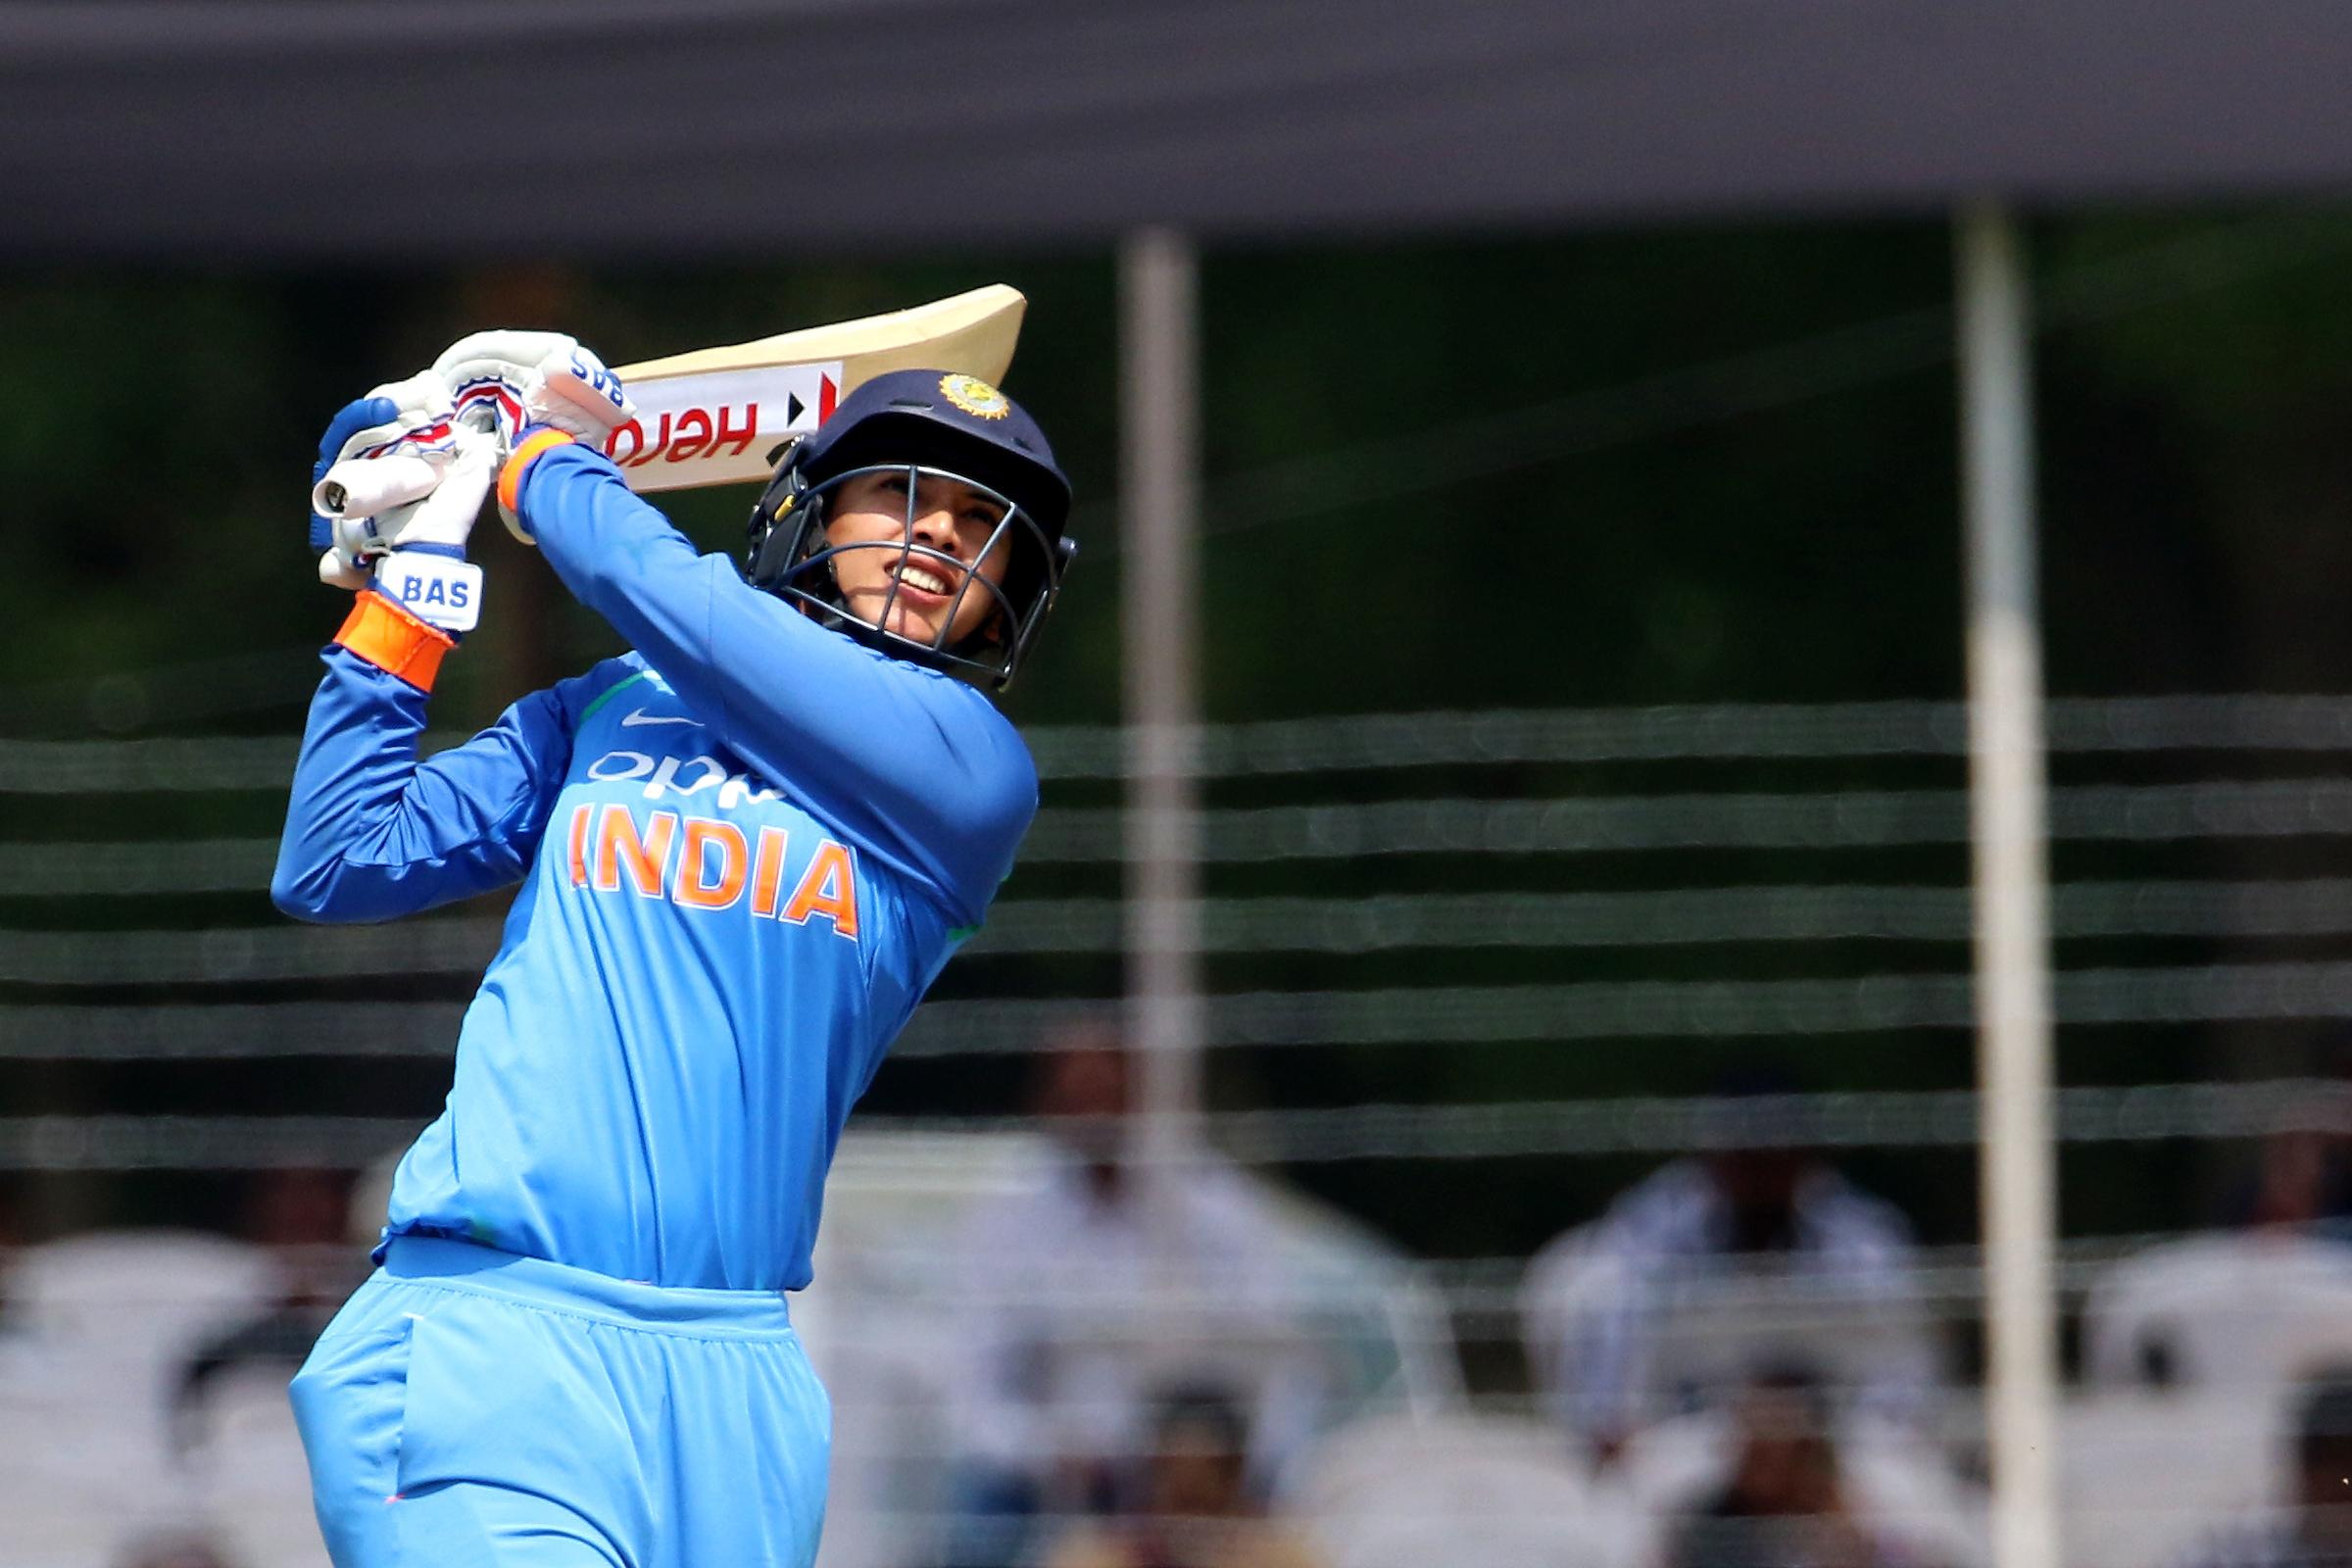 भारतीय महिला क्रिकेटर स्मृति मंधाना ने वनडे रैंकिंग में किया नंबर वन पर कब्जा, इस स्टार खिलाड़ी को किया बेदखल 1